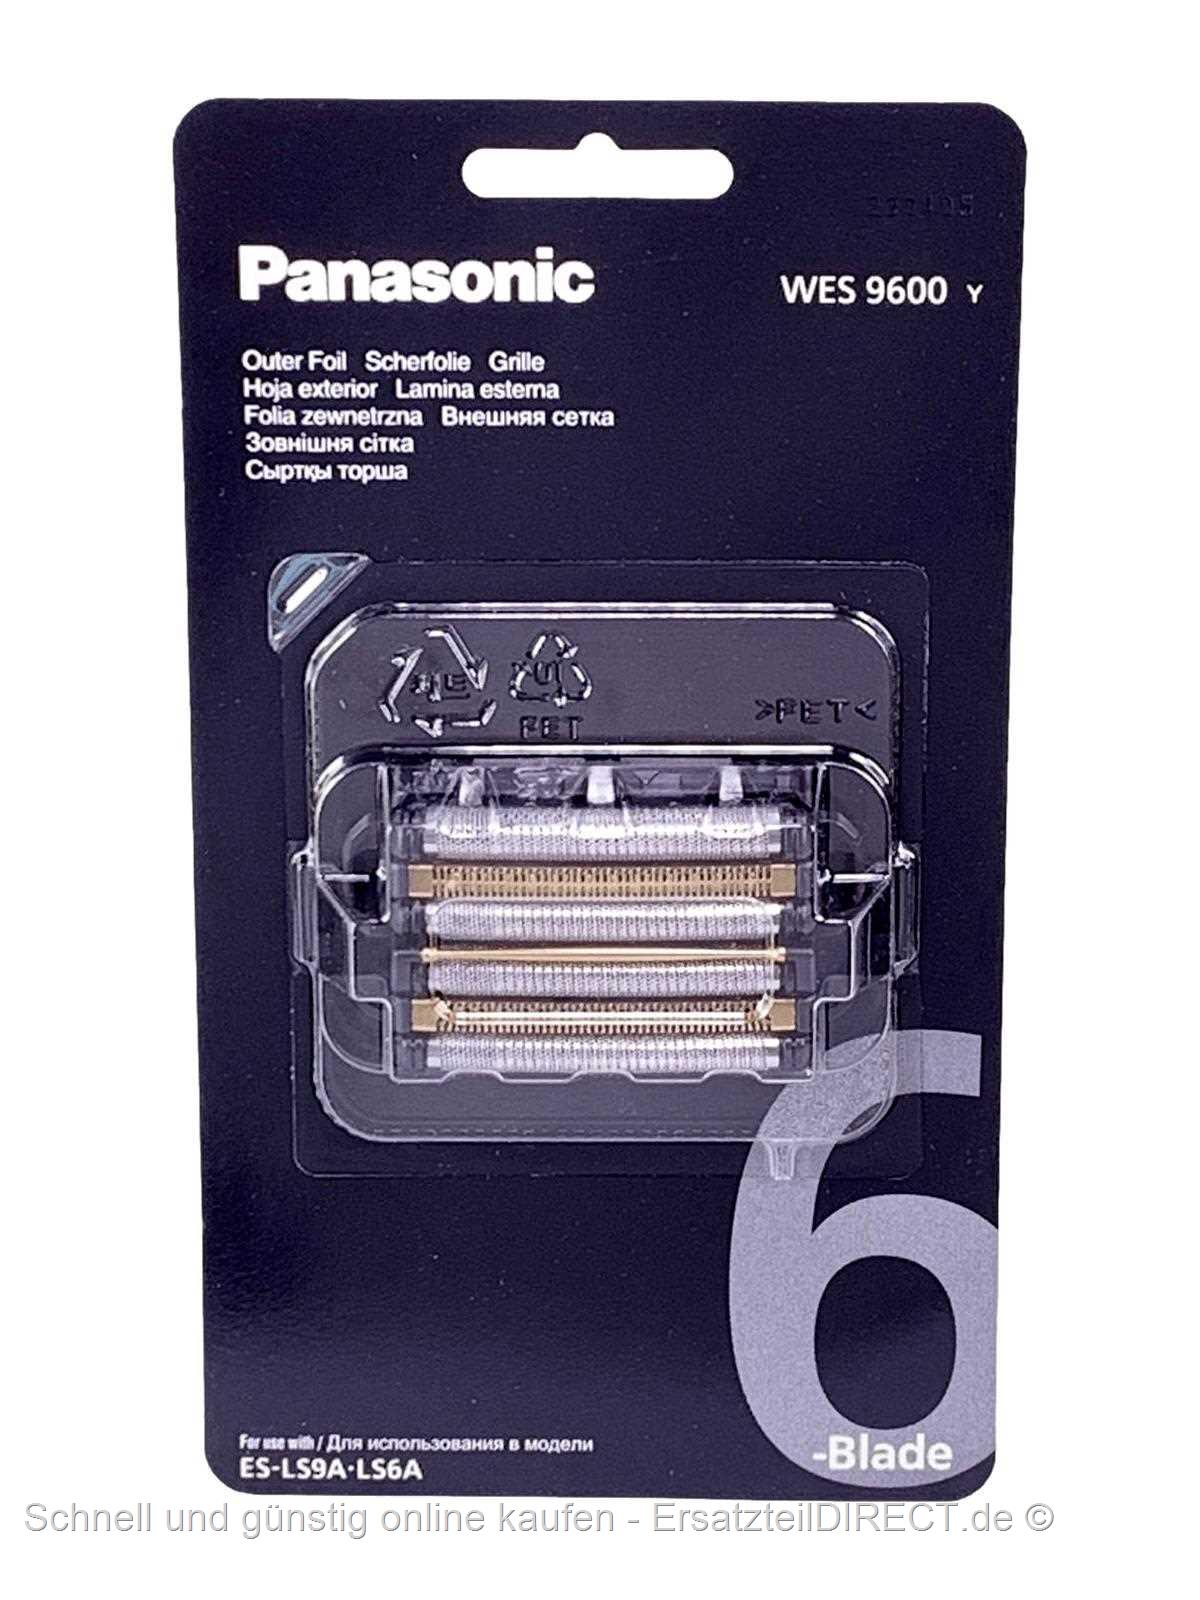 +Klingen Kombipack Scherfolie günstig bei WES9600 kaufen Panasonic WES9600Y